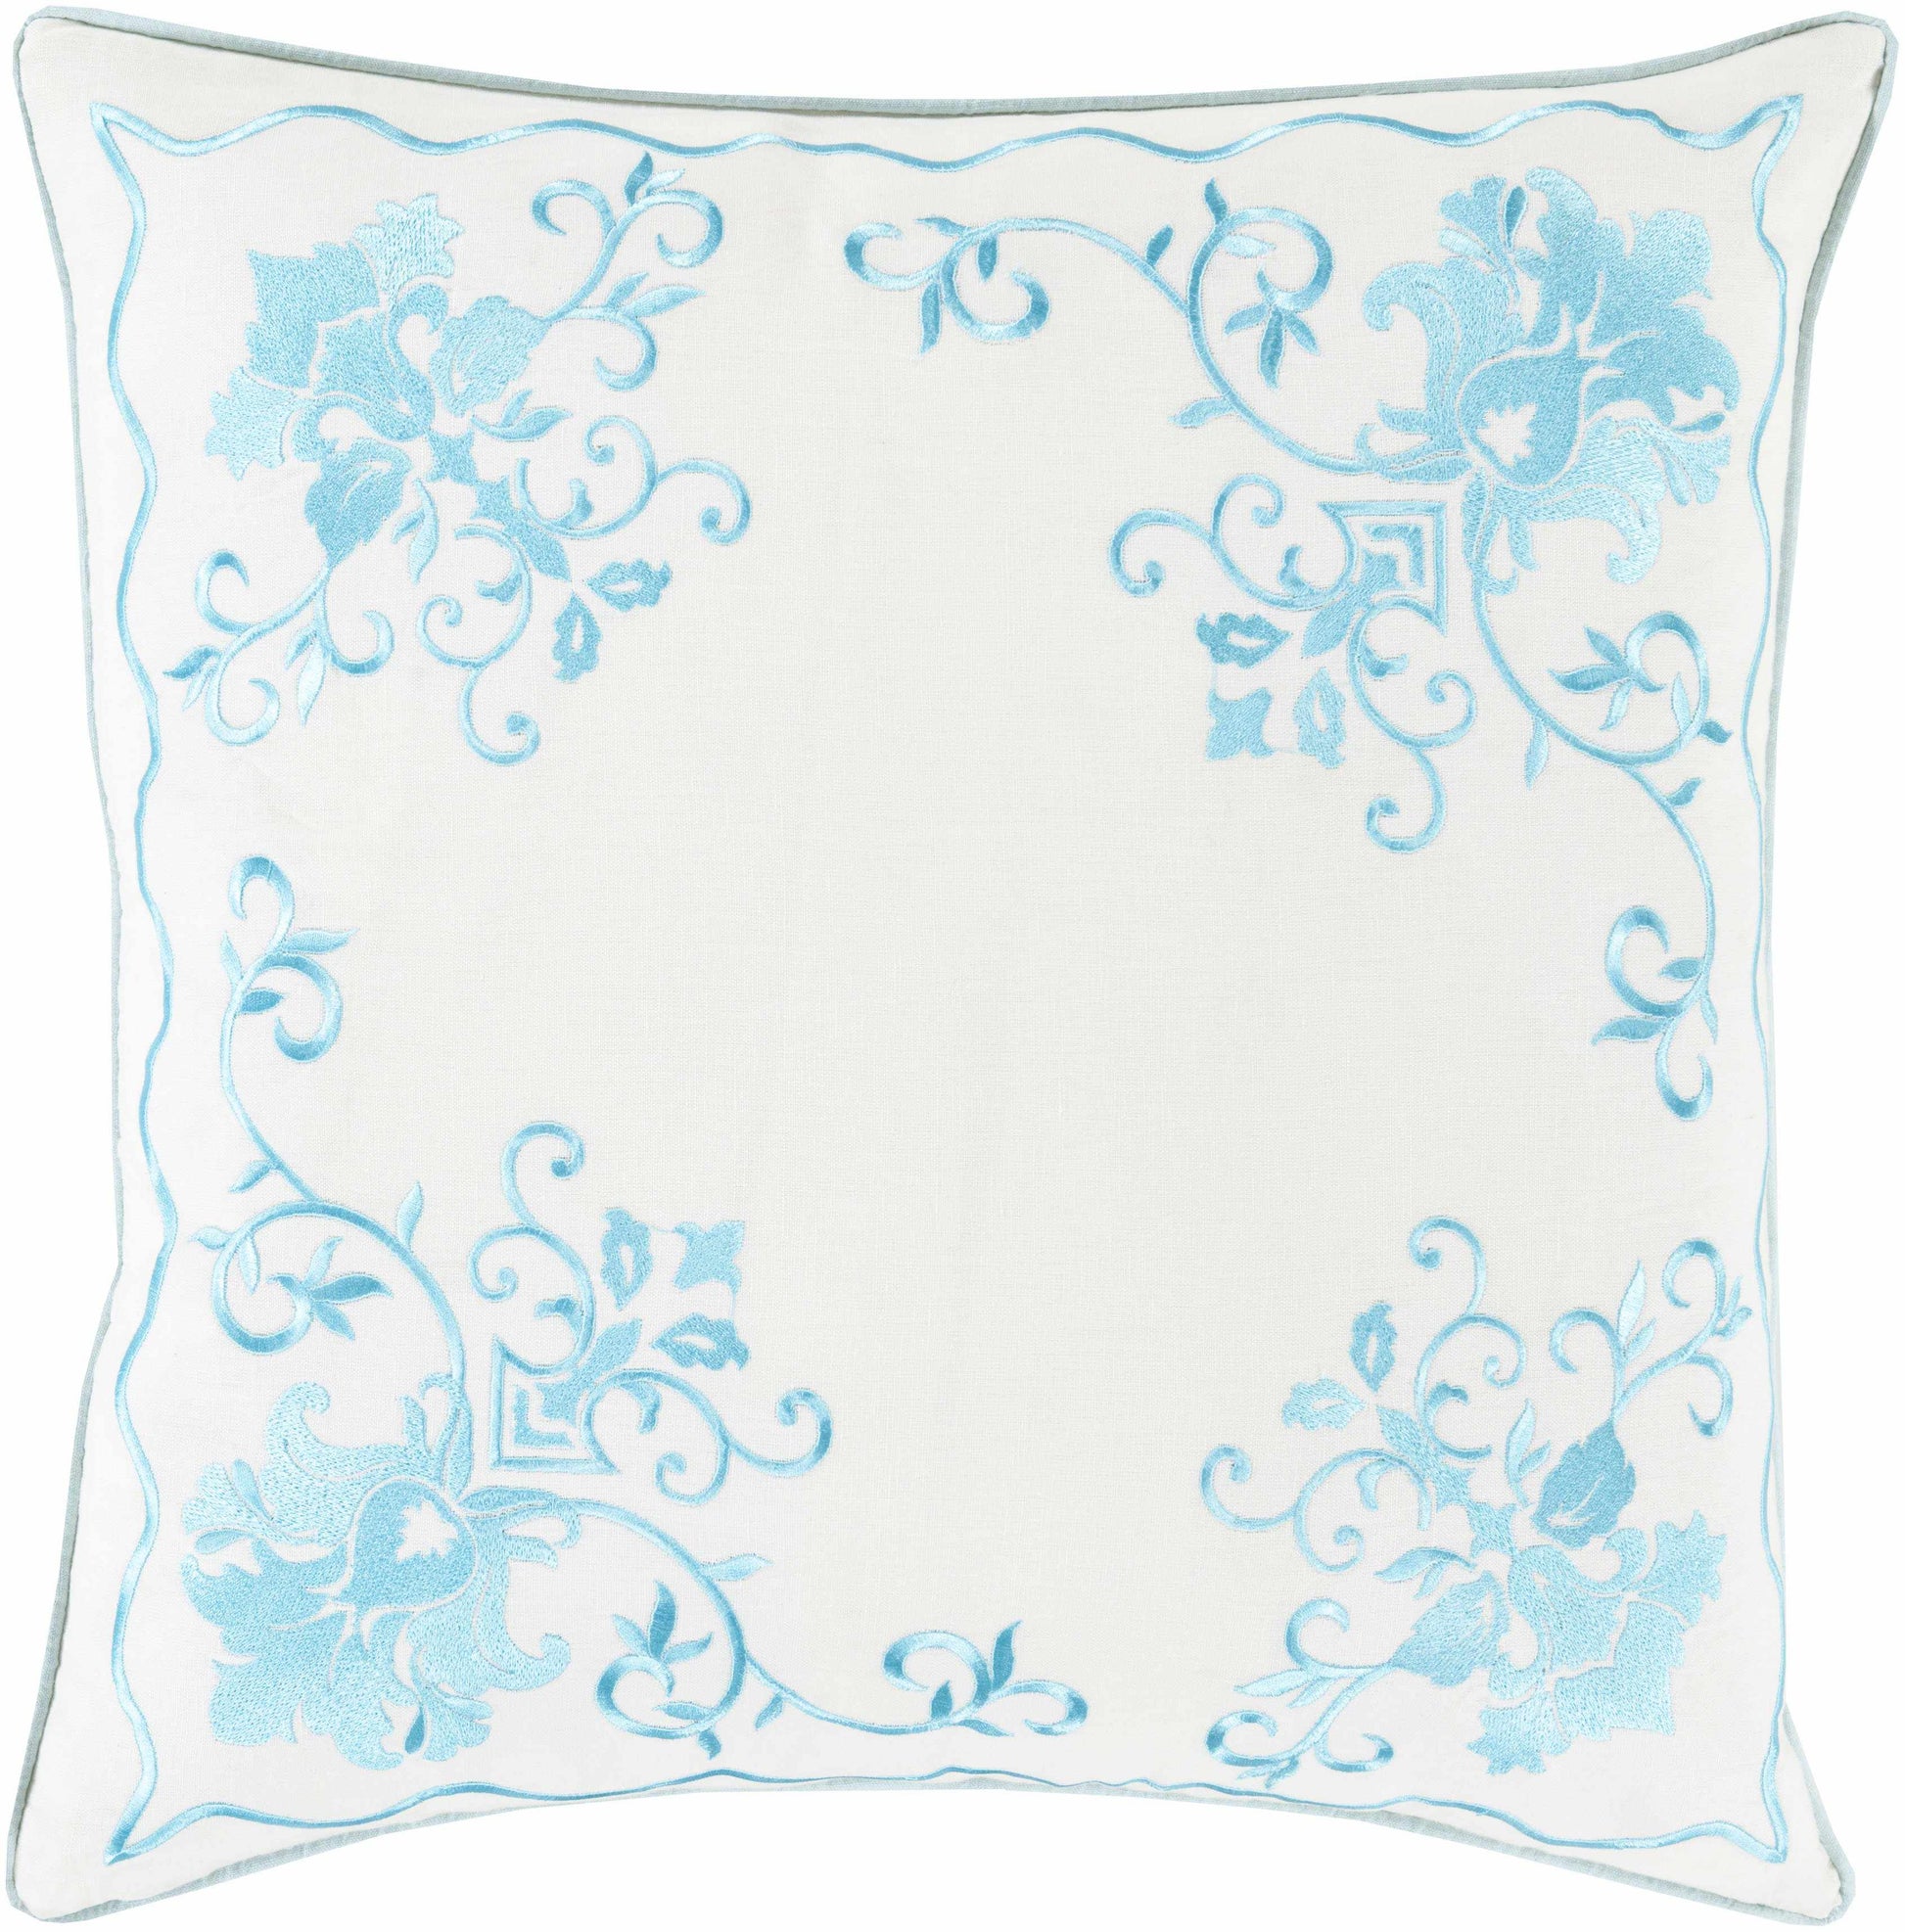 Zottegem Aqua Pillow Cover